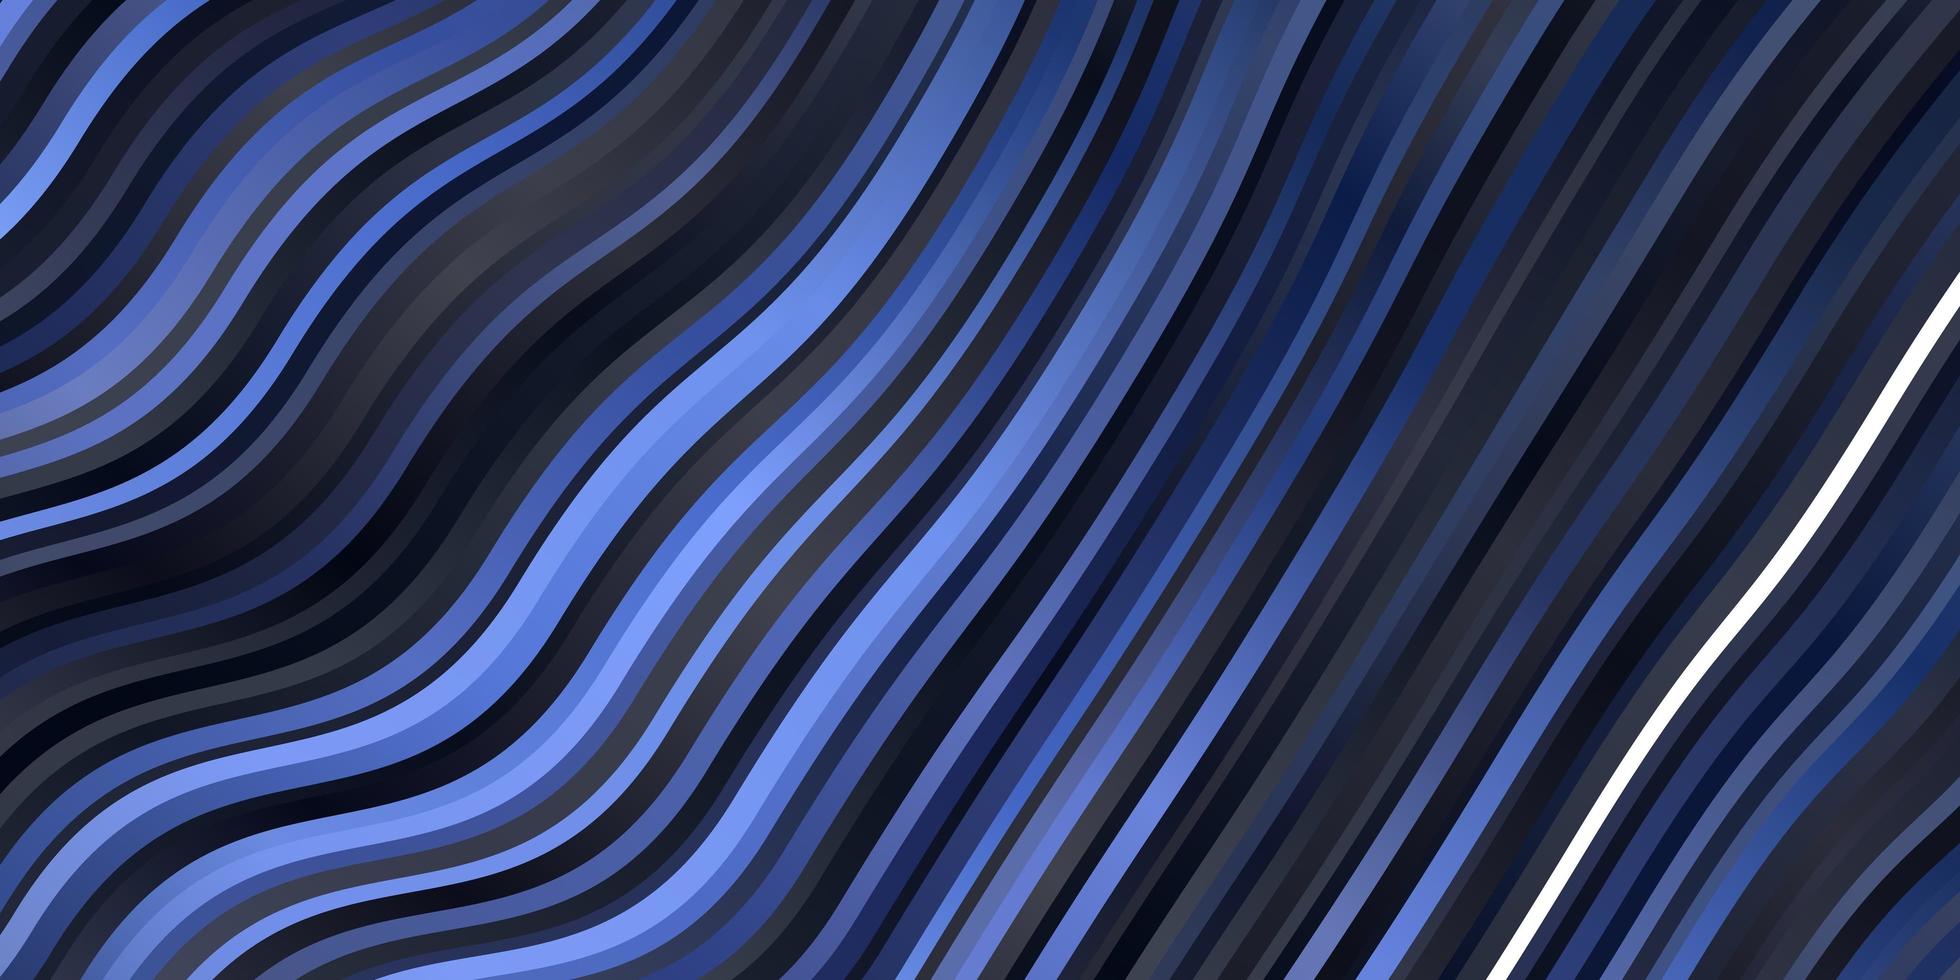 sfondo vettoriale viola scuro con linee piegate campione geometrico colorato con motivo a curve sfumate per opuscoli aziendali opuscoli